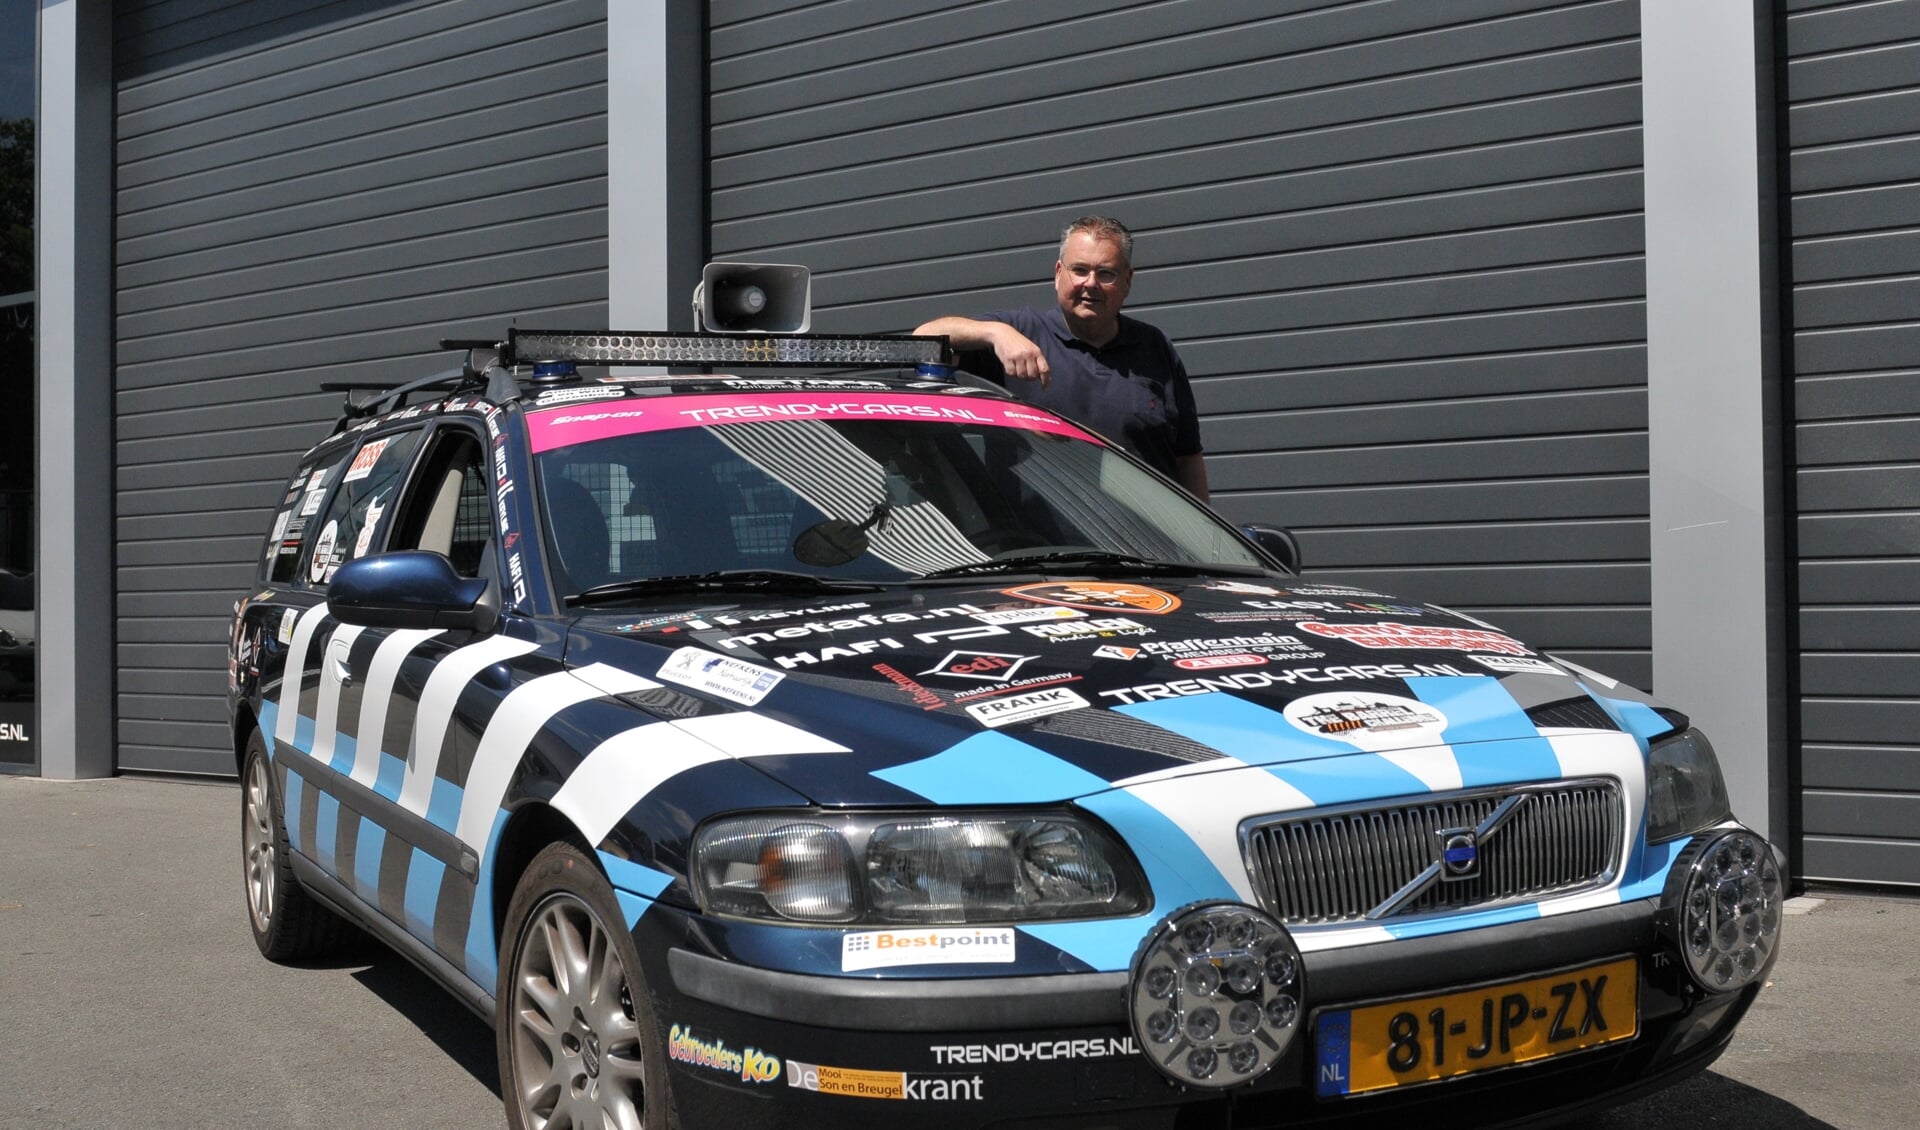 Erik Mol bij zijn Volvo, waarmee hij samen met David van Grinsven in rijdt